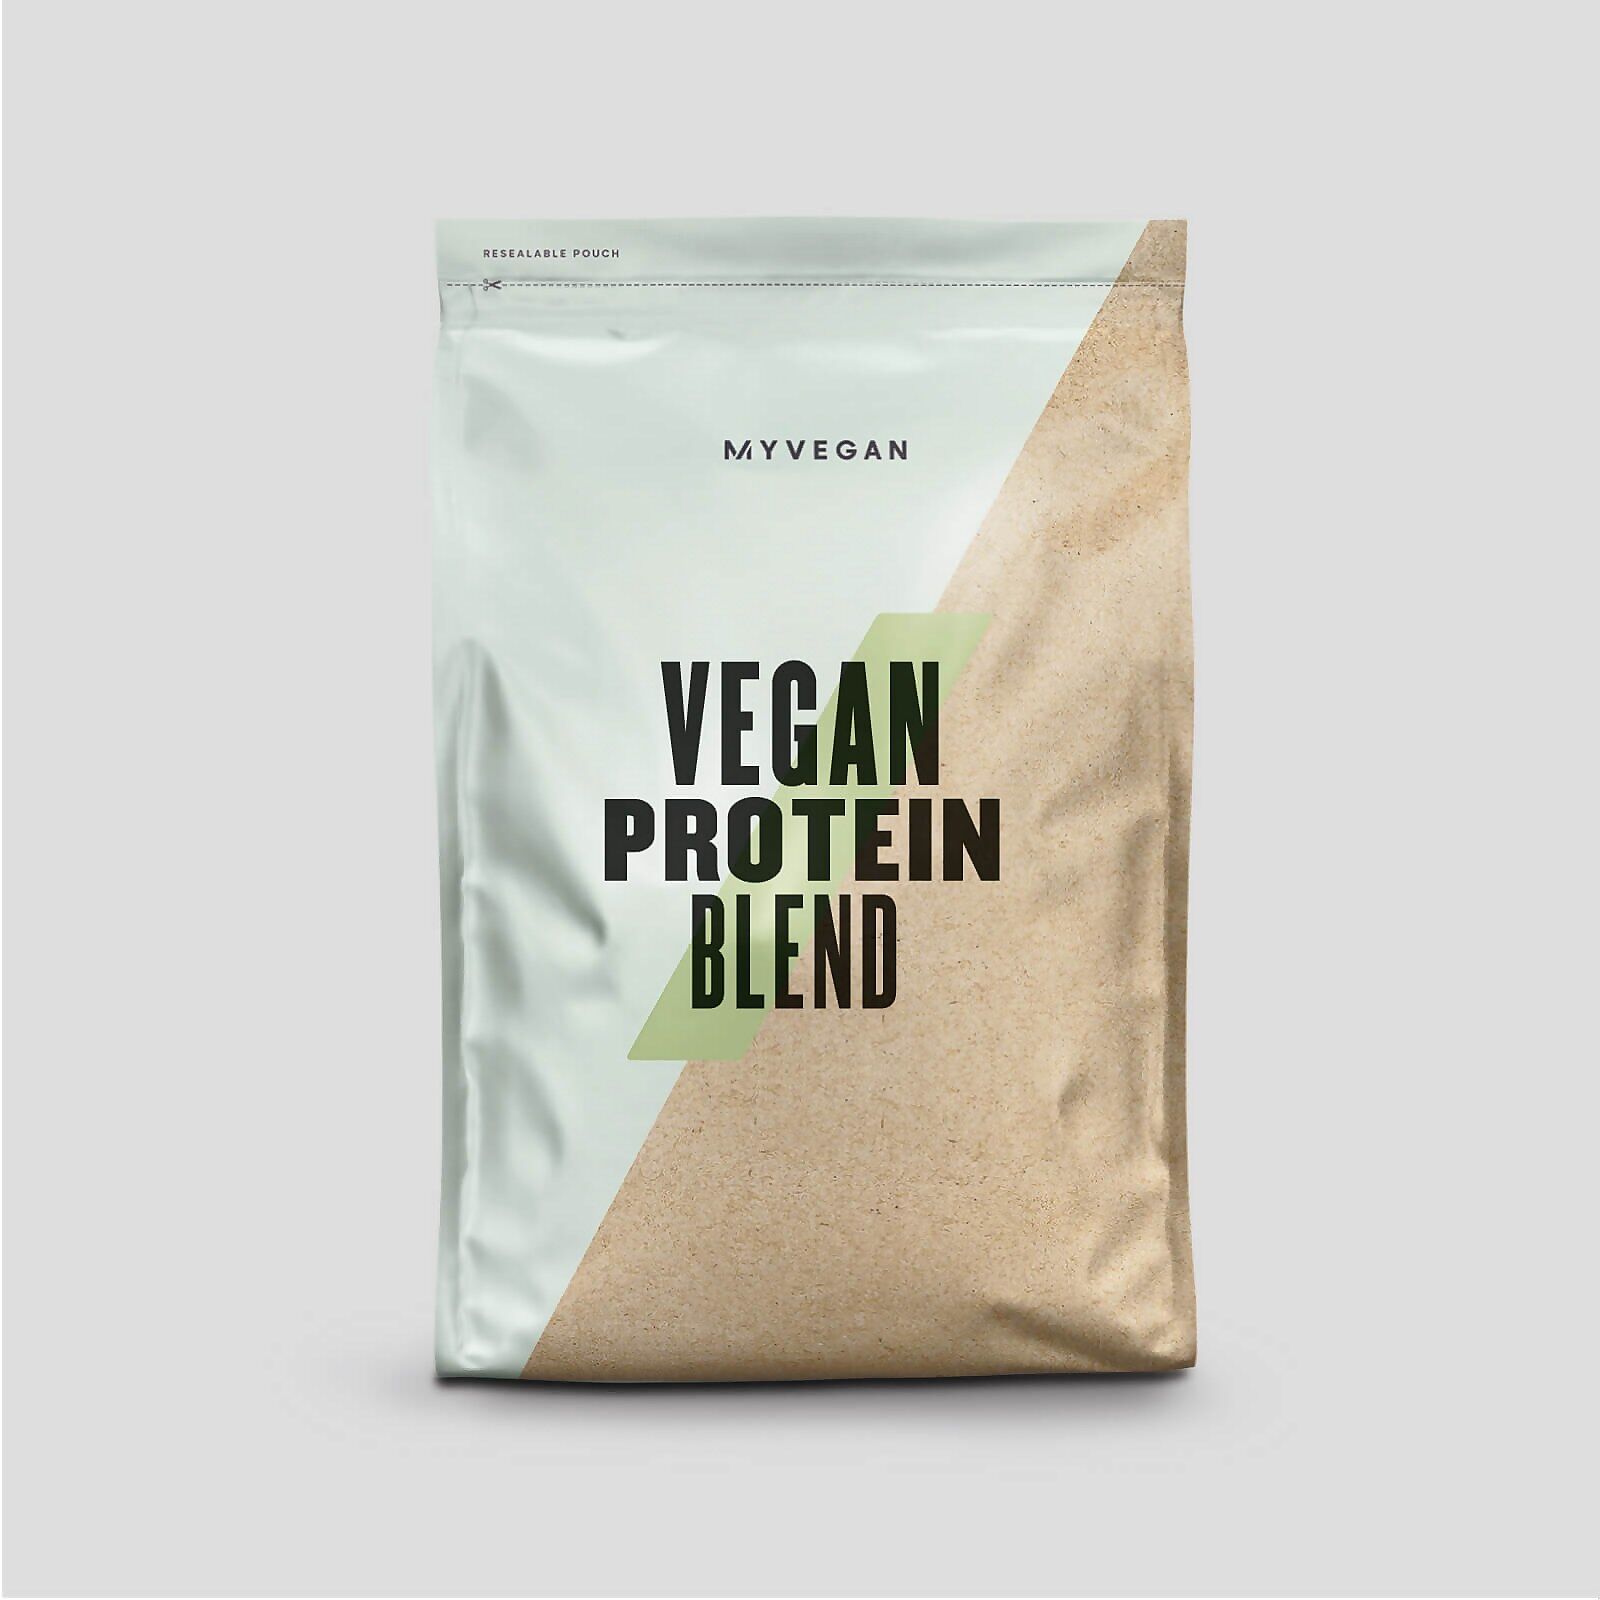 Myprotein Vegan Protein Blend - 250g - Coffee & Walnut